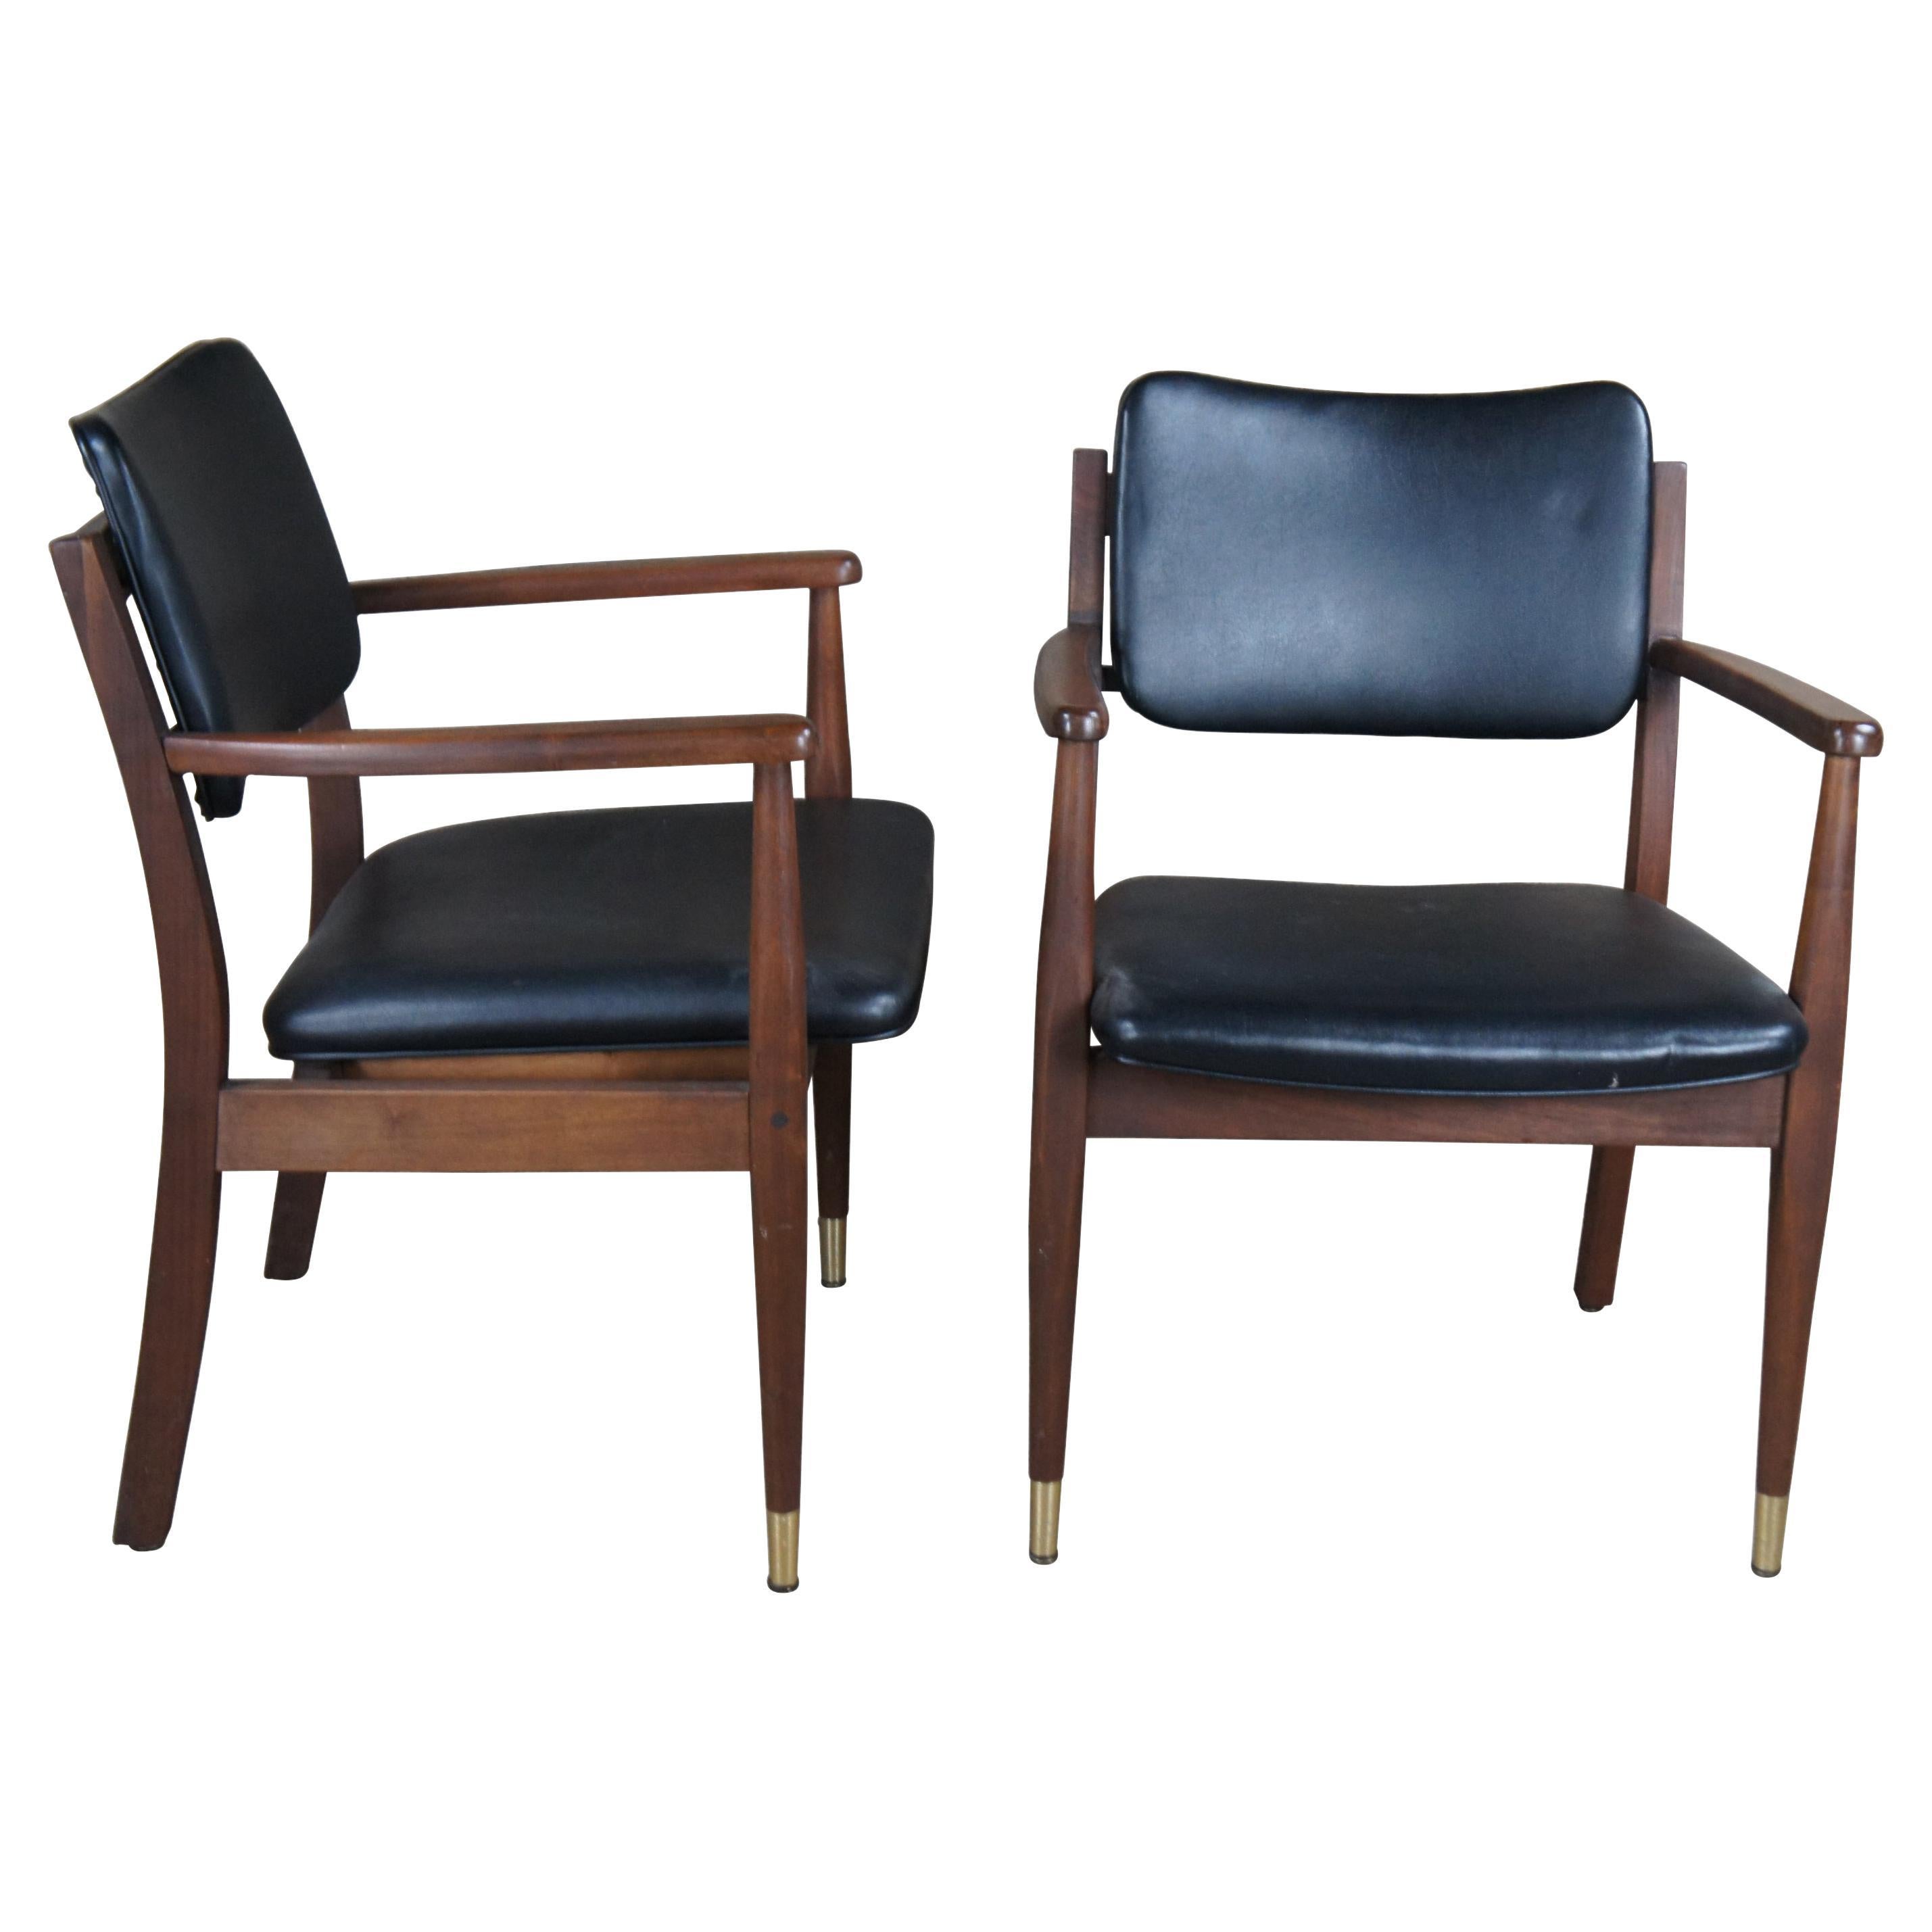 2 fauteuils Gregson de style danois moderne du milieu du siècle dernier, en noyer et cuir en vente